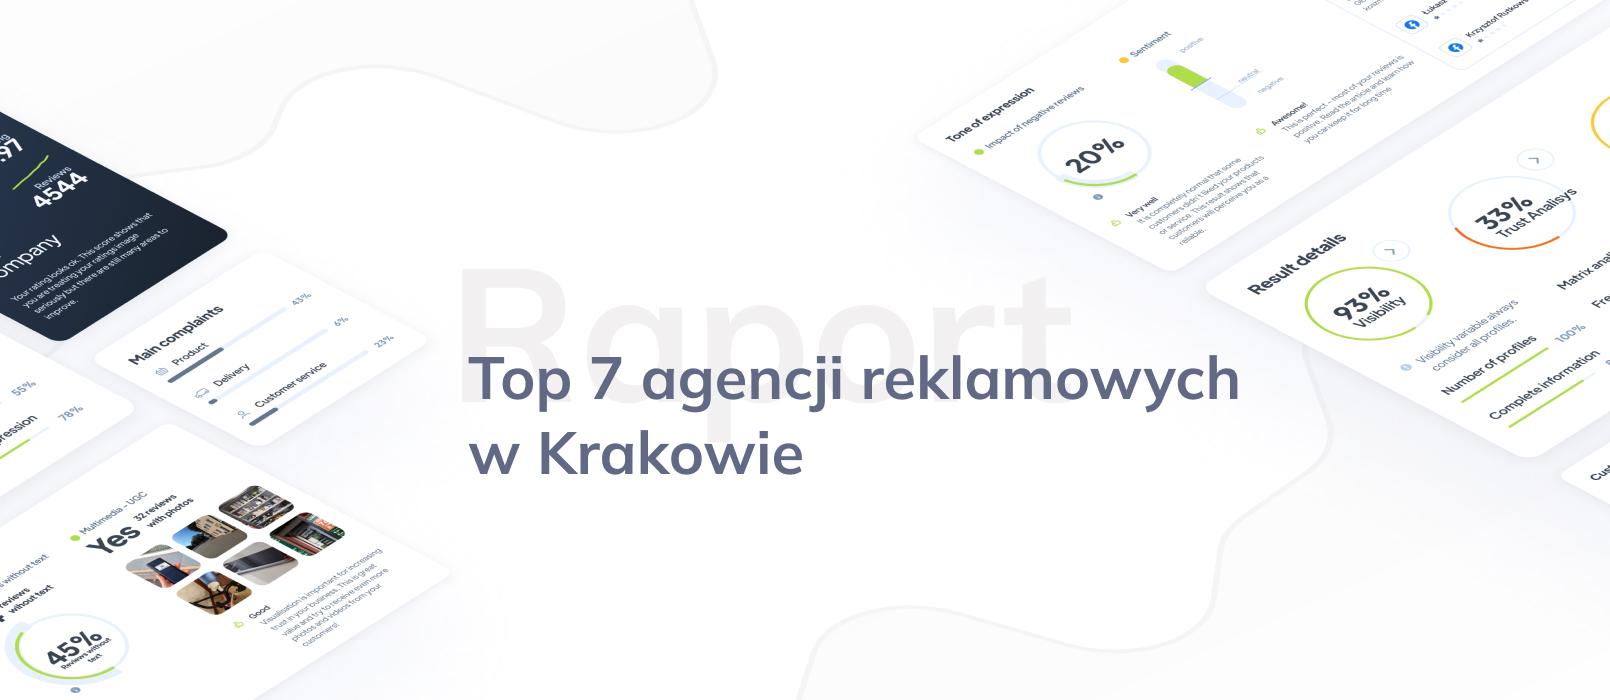 Top 7 agencji reklamowych w Krakowie – ranking opinii klientów